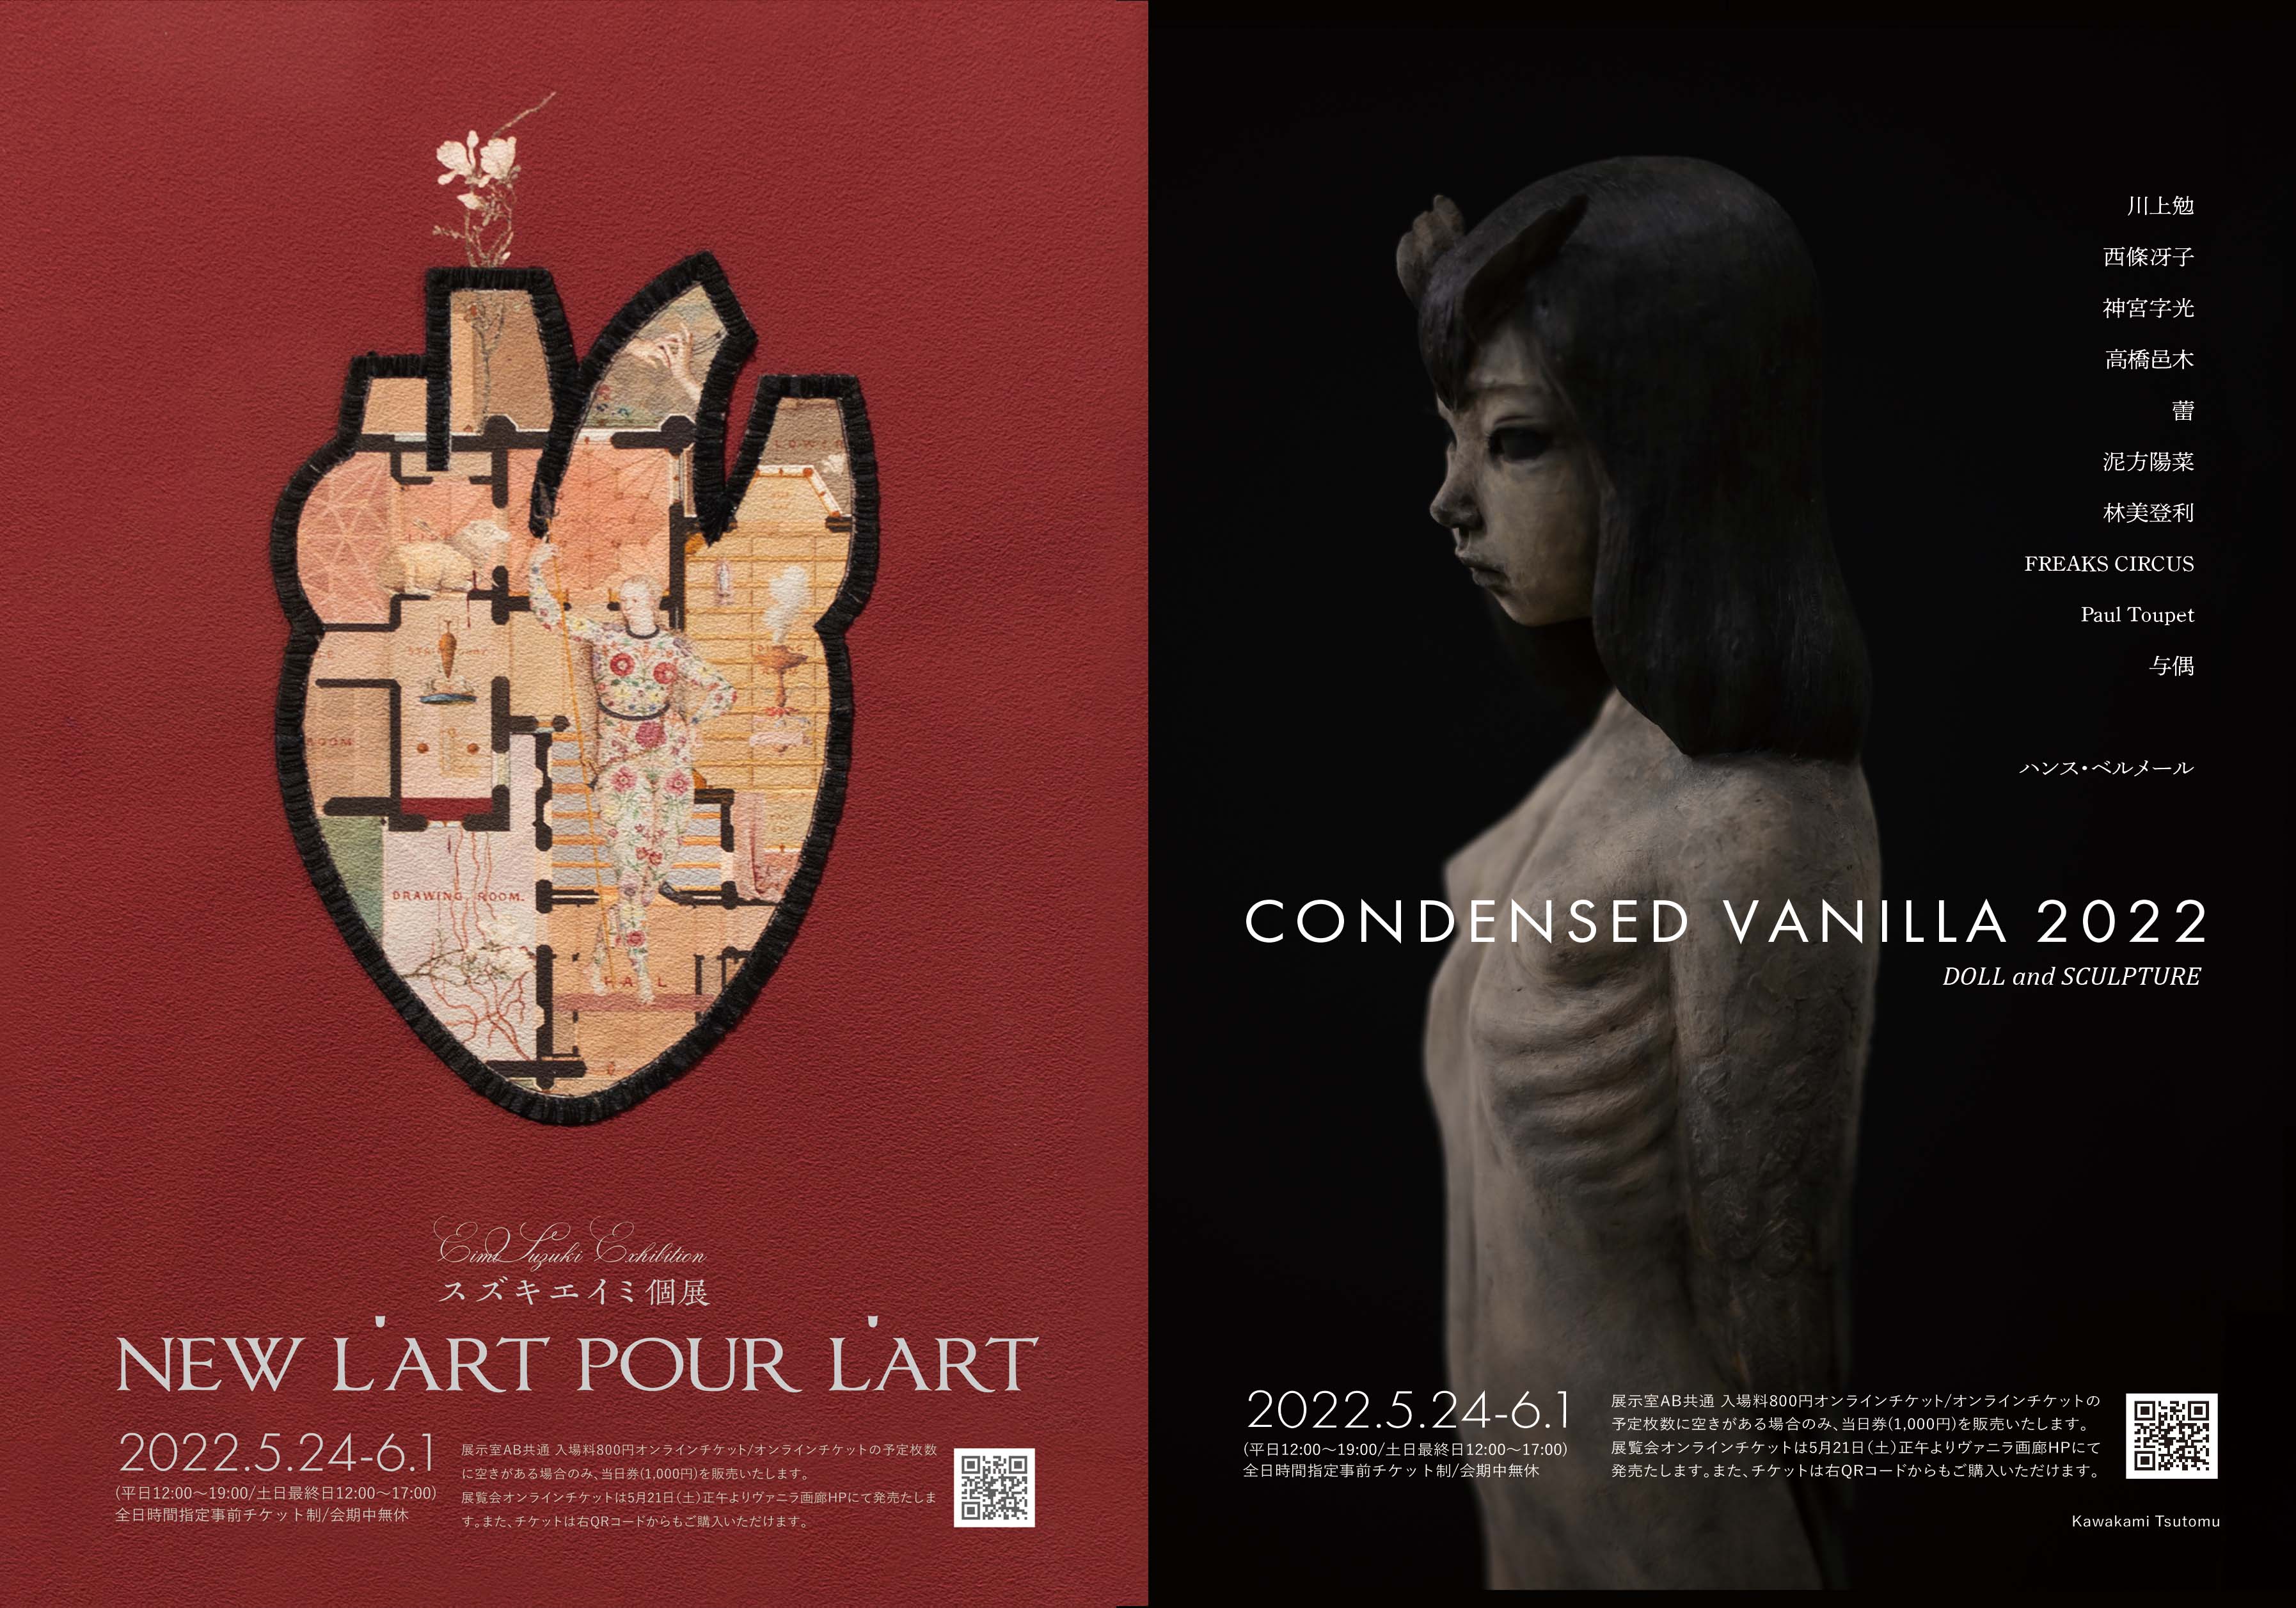 スズキエイミ個展「New L'art pour l'art」/ CONDENSED VANILLA 2022 DOLL＆SCULPTURE 5月28日(土)